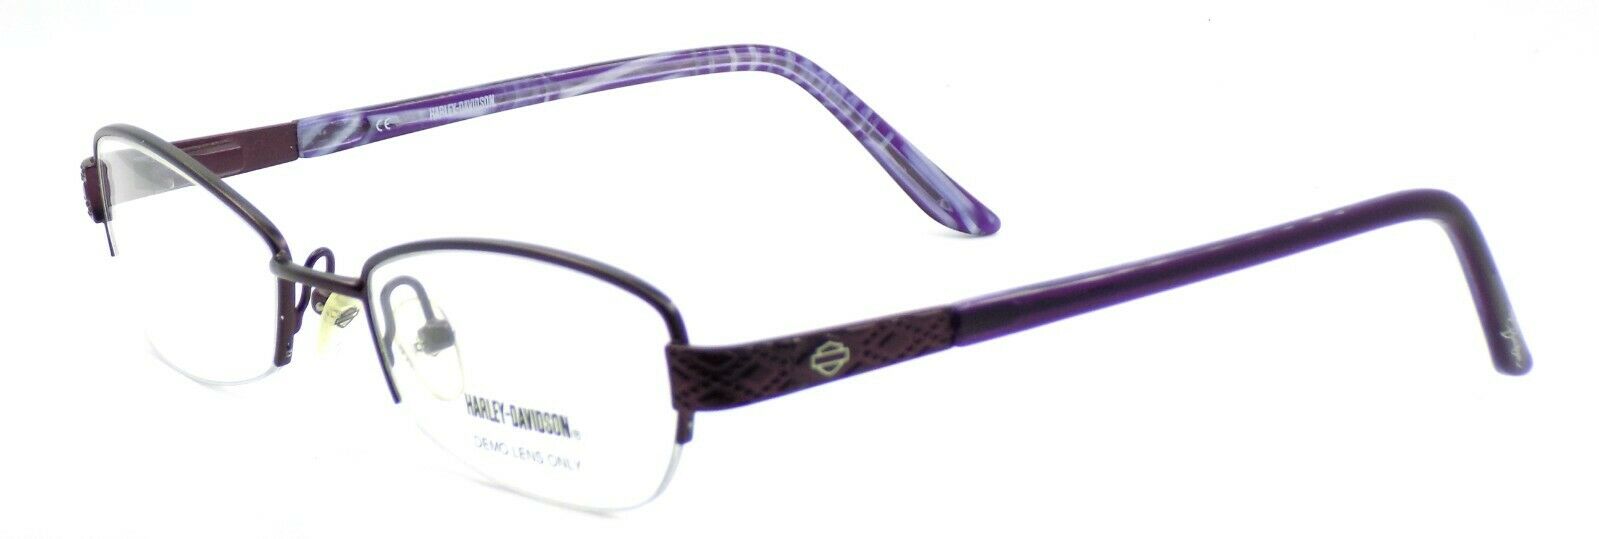 1-Harley Davidson HD504 EGG Women's Eyeglasses Frames 50-18-135 Eggplant Violet-715583443327-IKSpecs